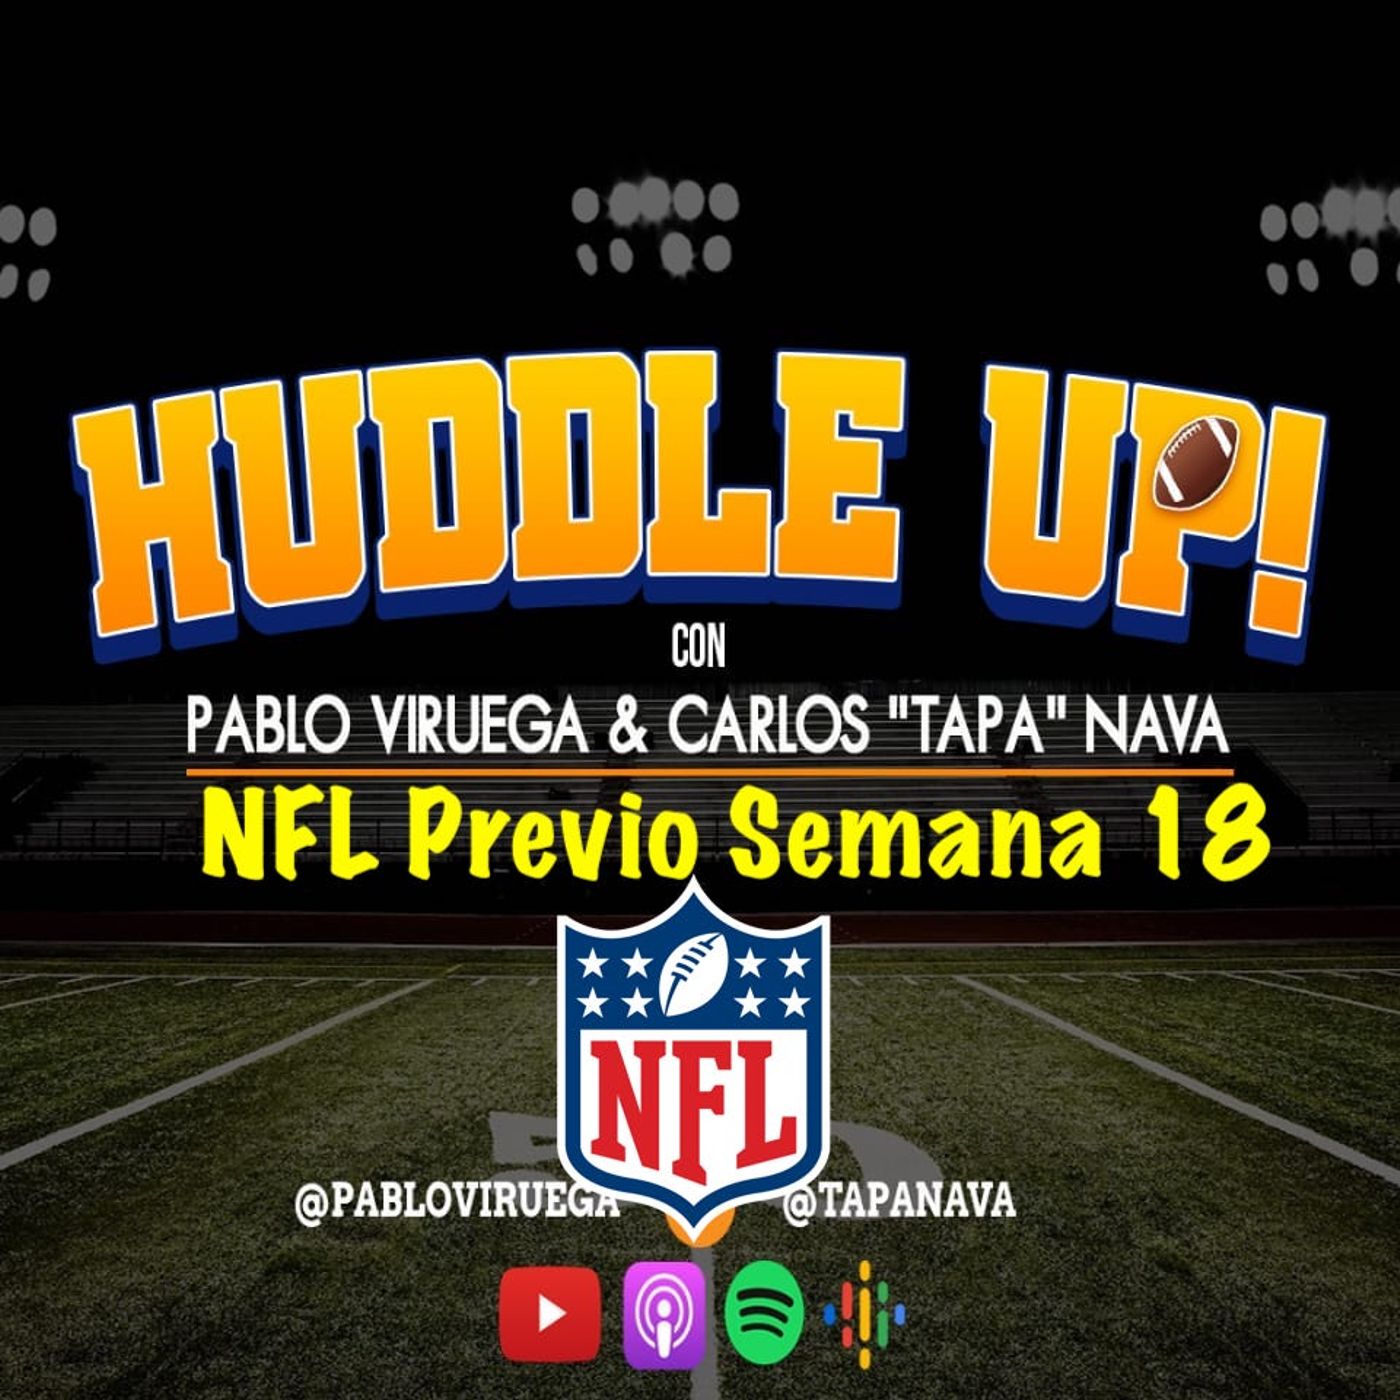 #HuddleUP Previo Semana 18 #NFL #NFLPlayoffs @TapaNava y @PabloViruega